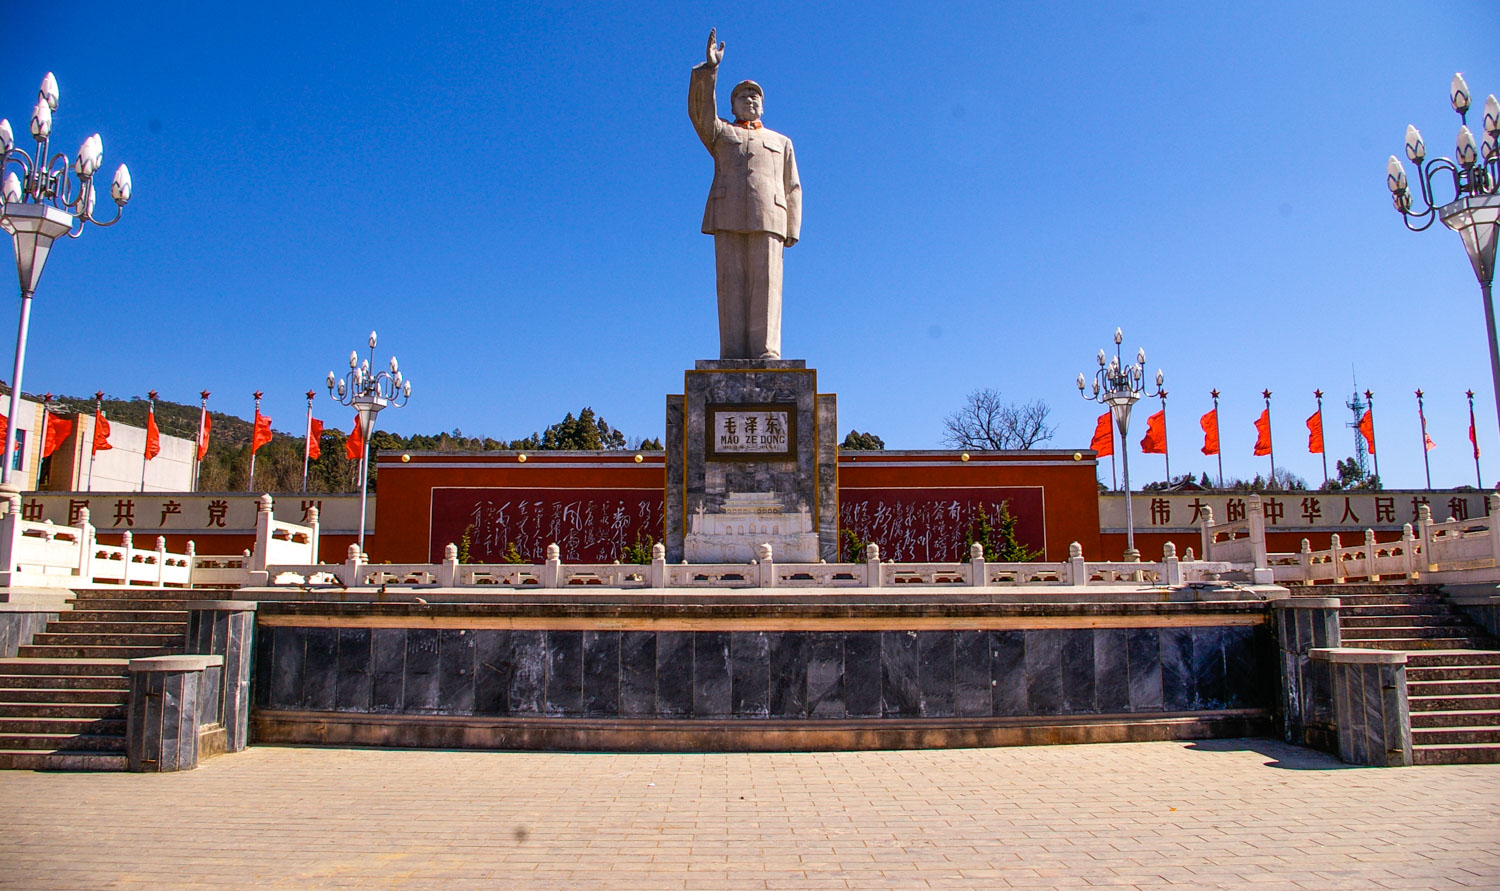 The Mao Zedong Statue in Lijiang